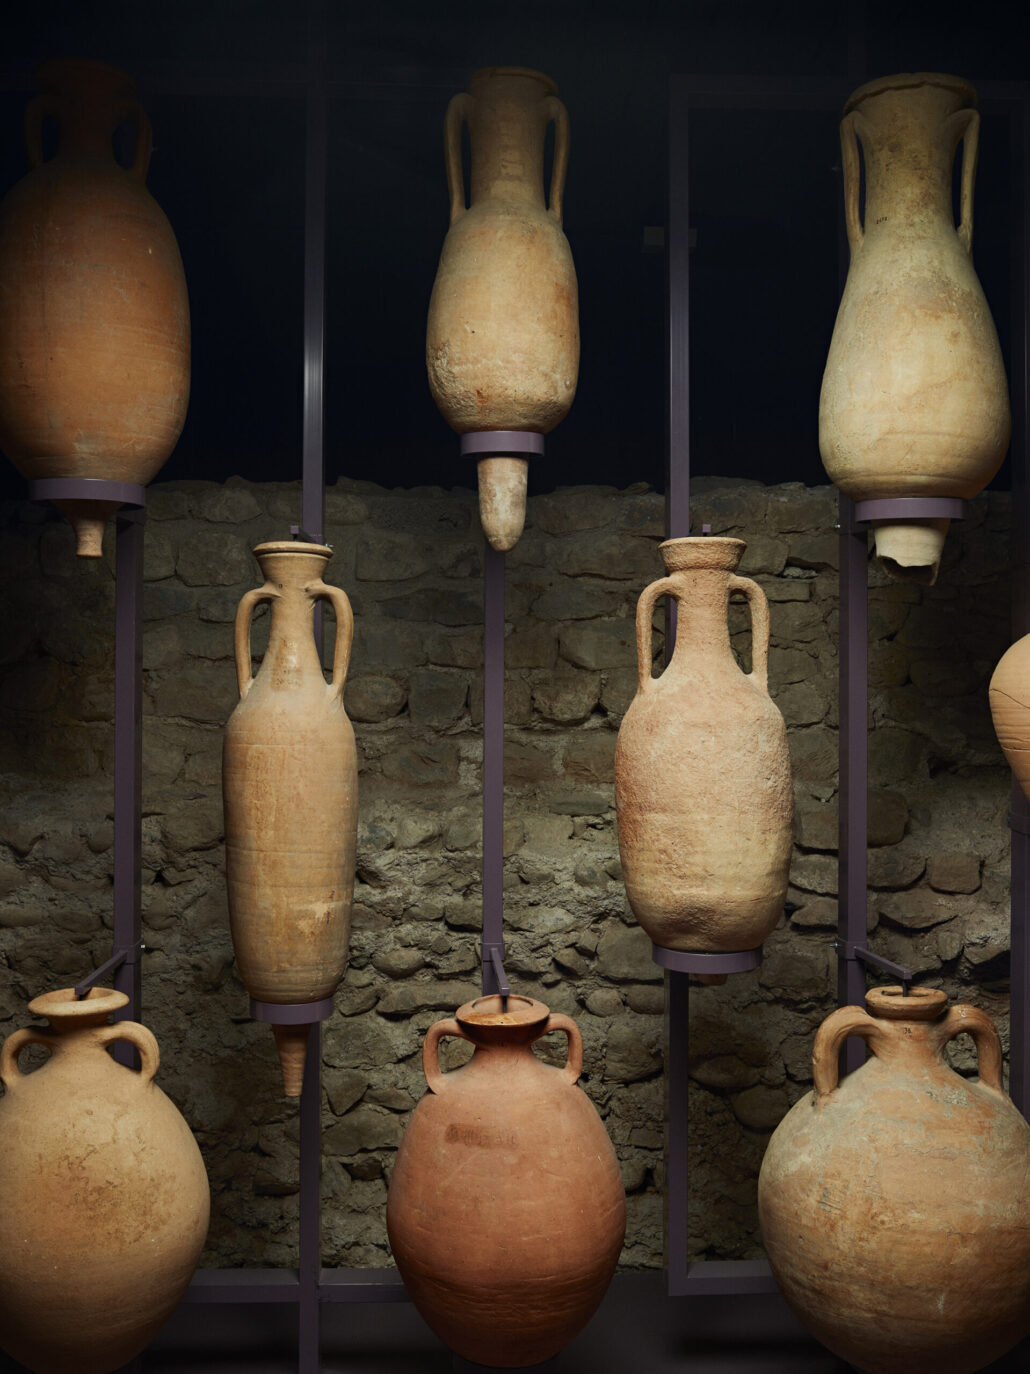 Plusieurs amphores romaines suspendues devant un mur